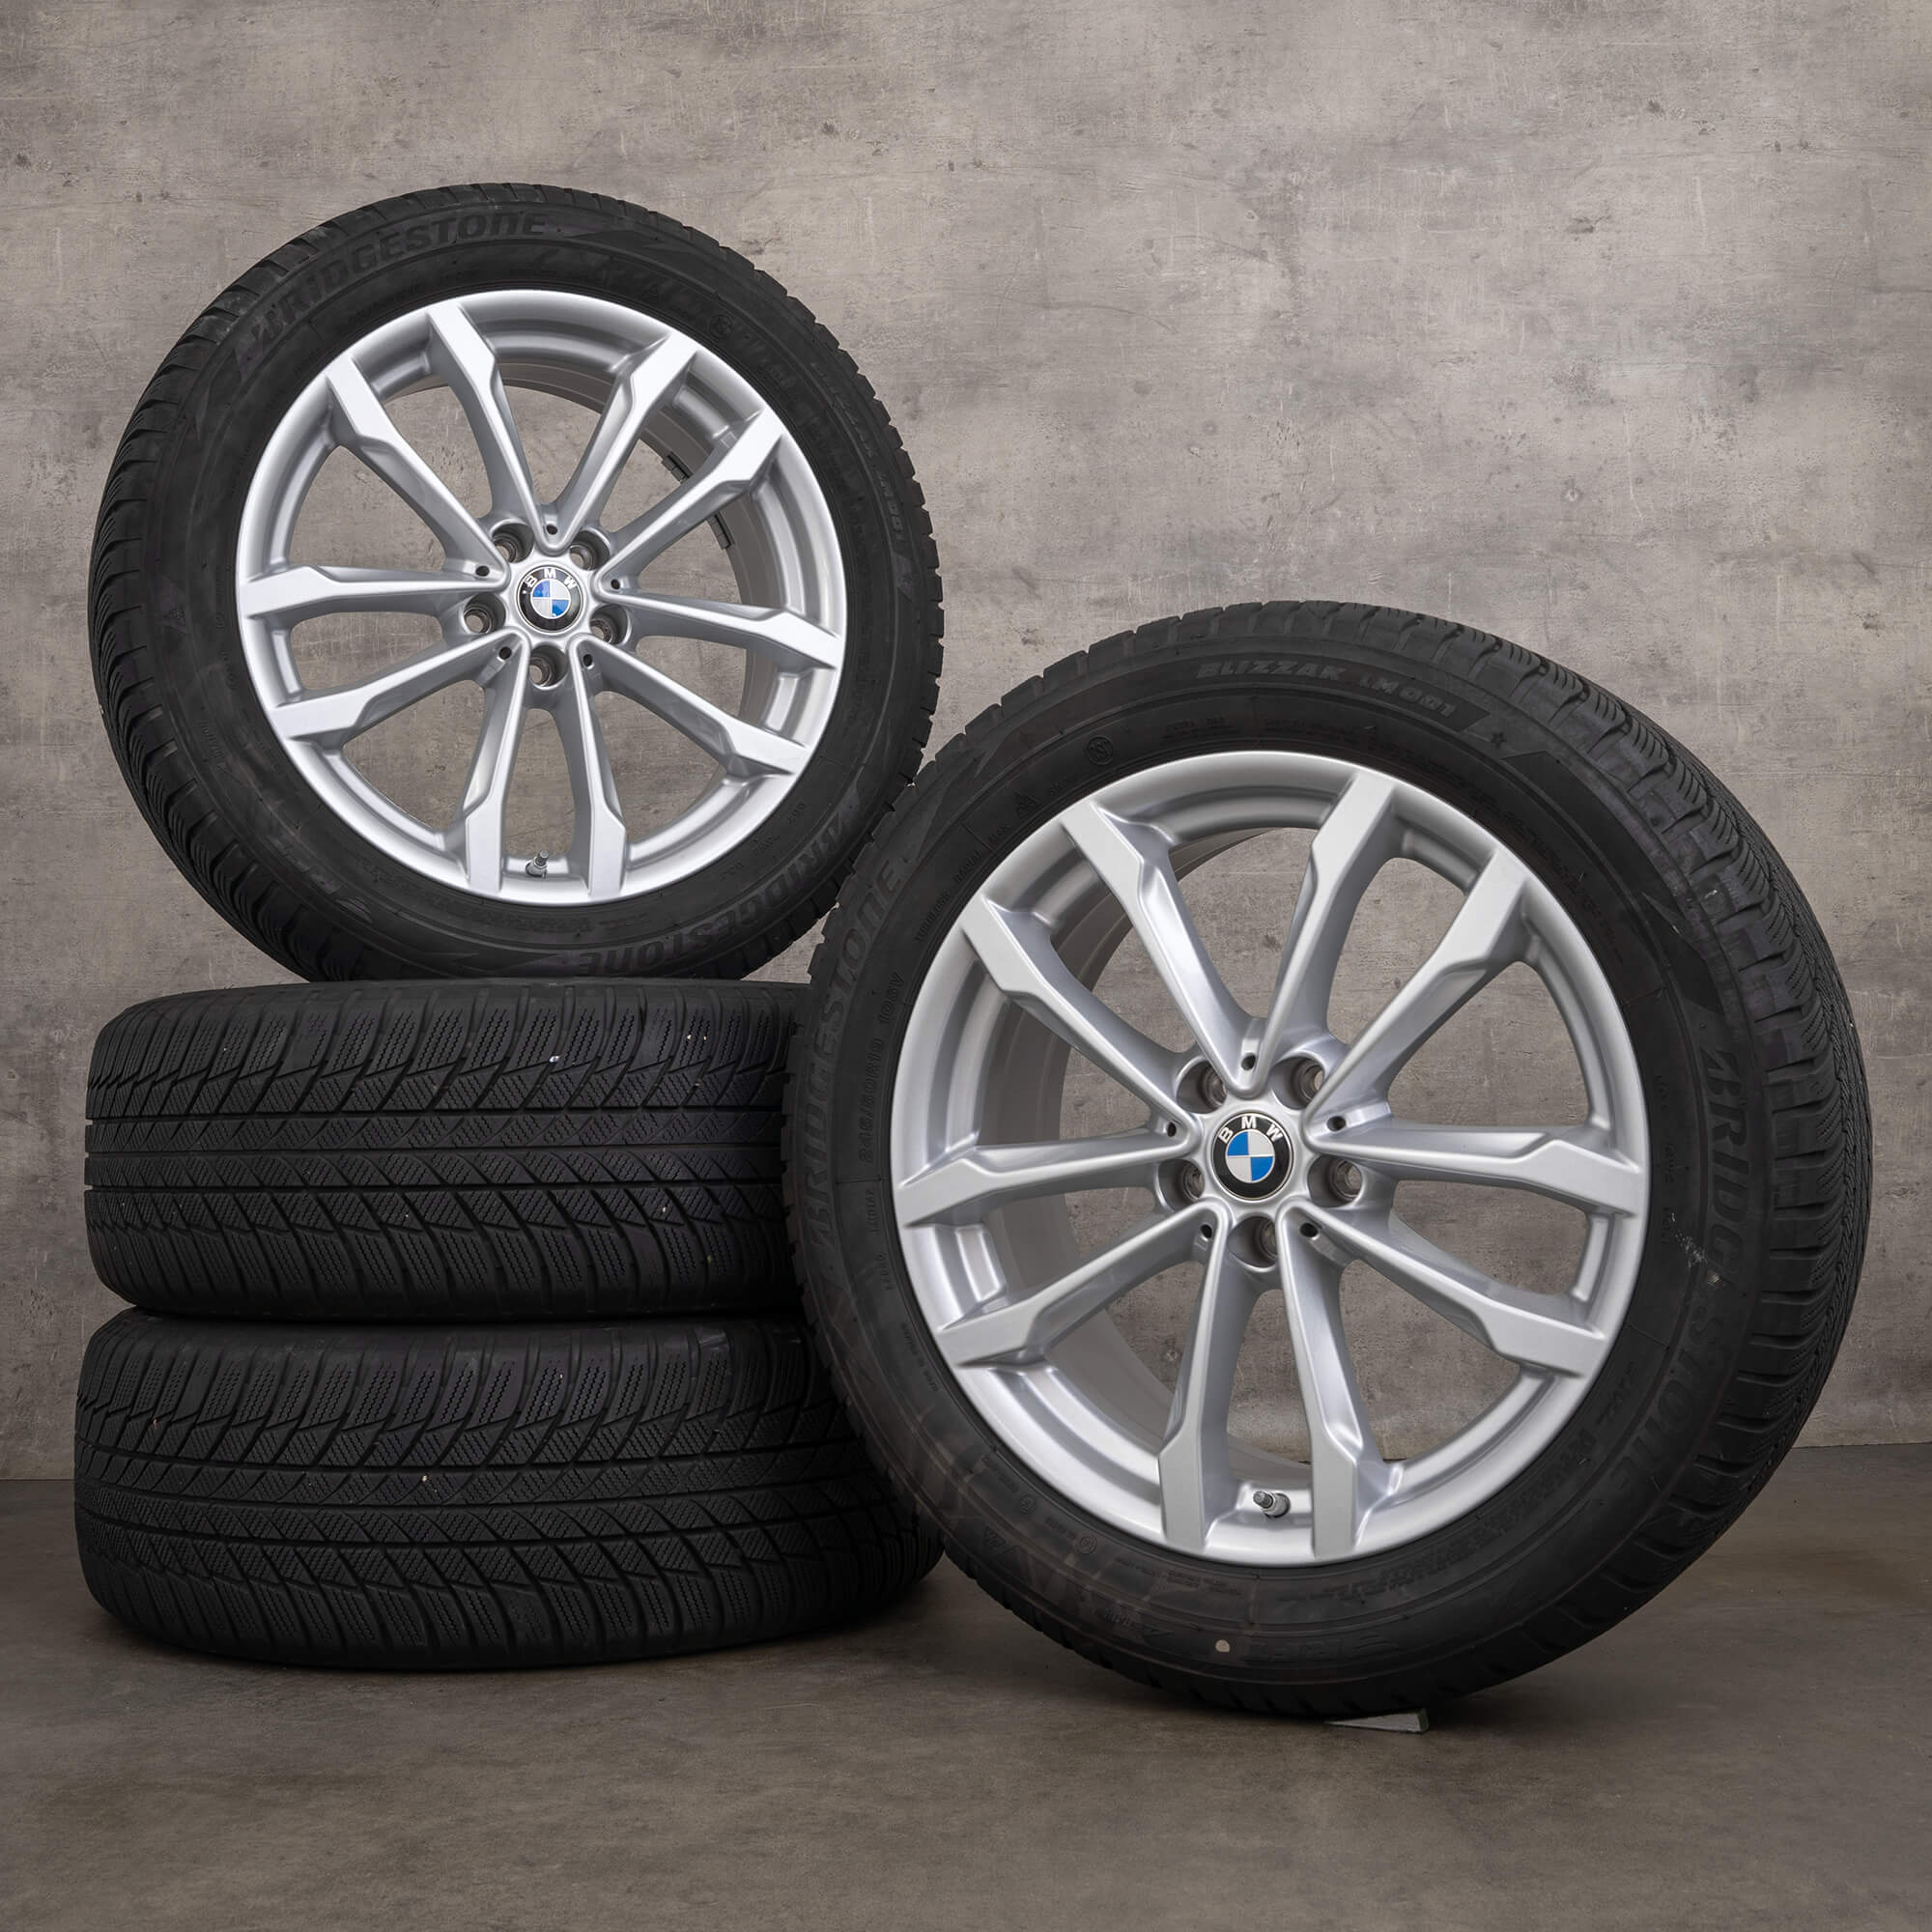 Original BMW X3 G01 X4 G02 jantes 19 pouces pneus hiver 6877325 691 argent